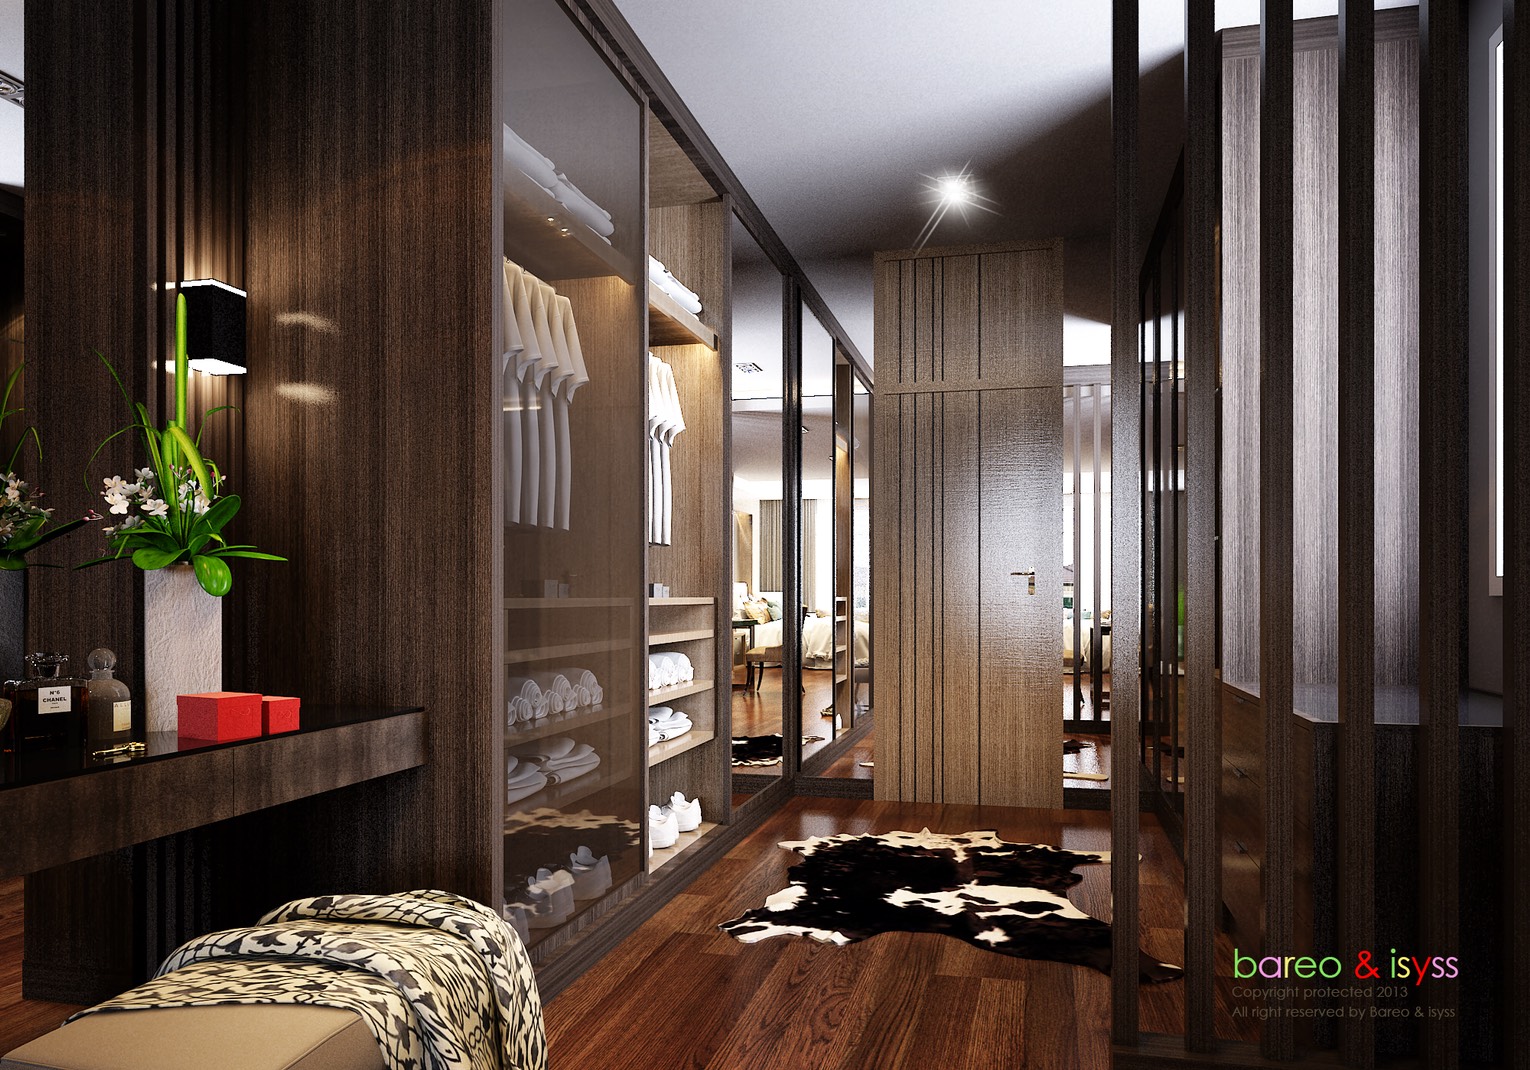 บาริโอ Bareo บริษัทบาริโอ ออกแบบตกแต่งภายใน ออกแบบภายใน ตกแต่งภายใน interior ห้องแต่งตัว ออกแบบตกแต่งภายในห้องแต่ตัว ออกแบบห้องแต่งตัว เฟอร์นิเจอร์